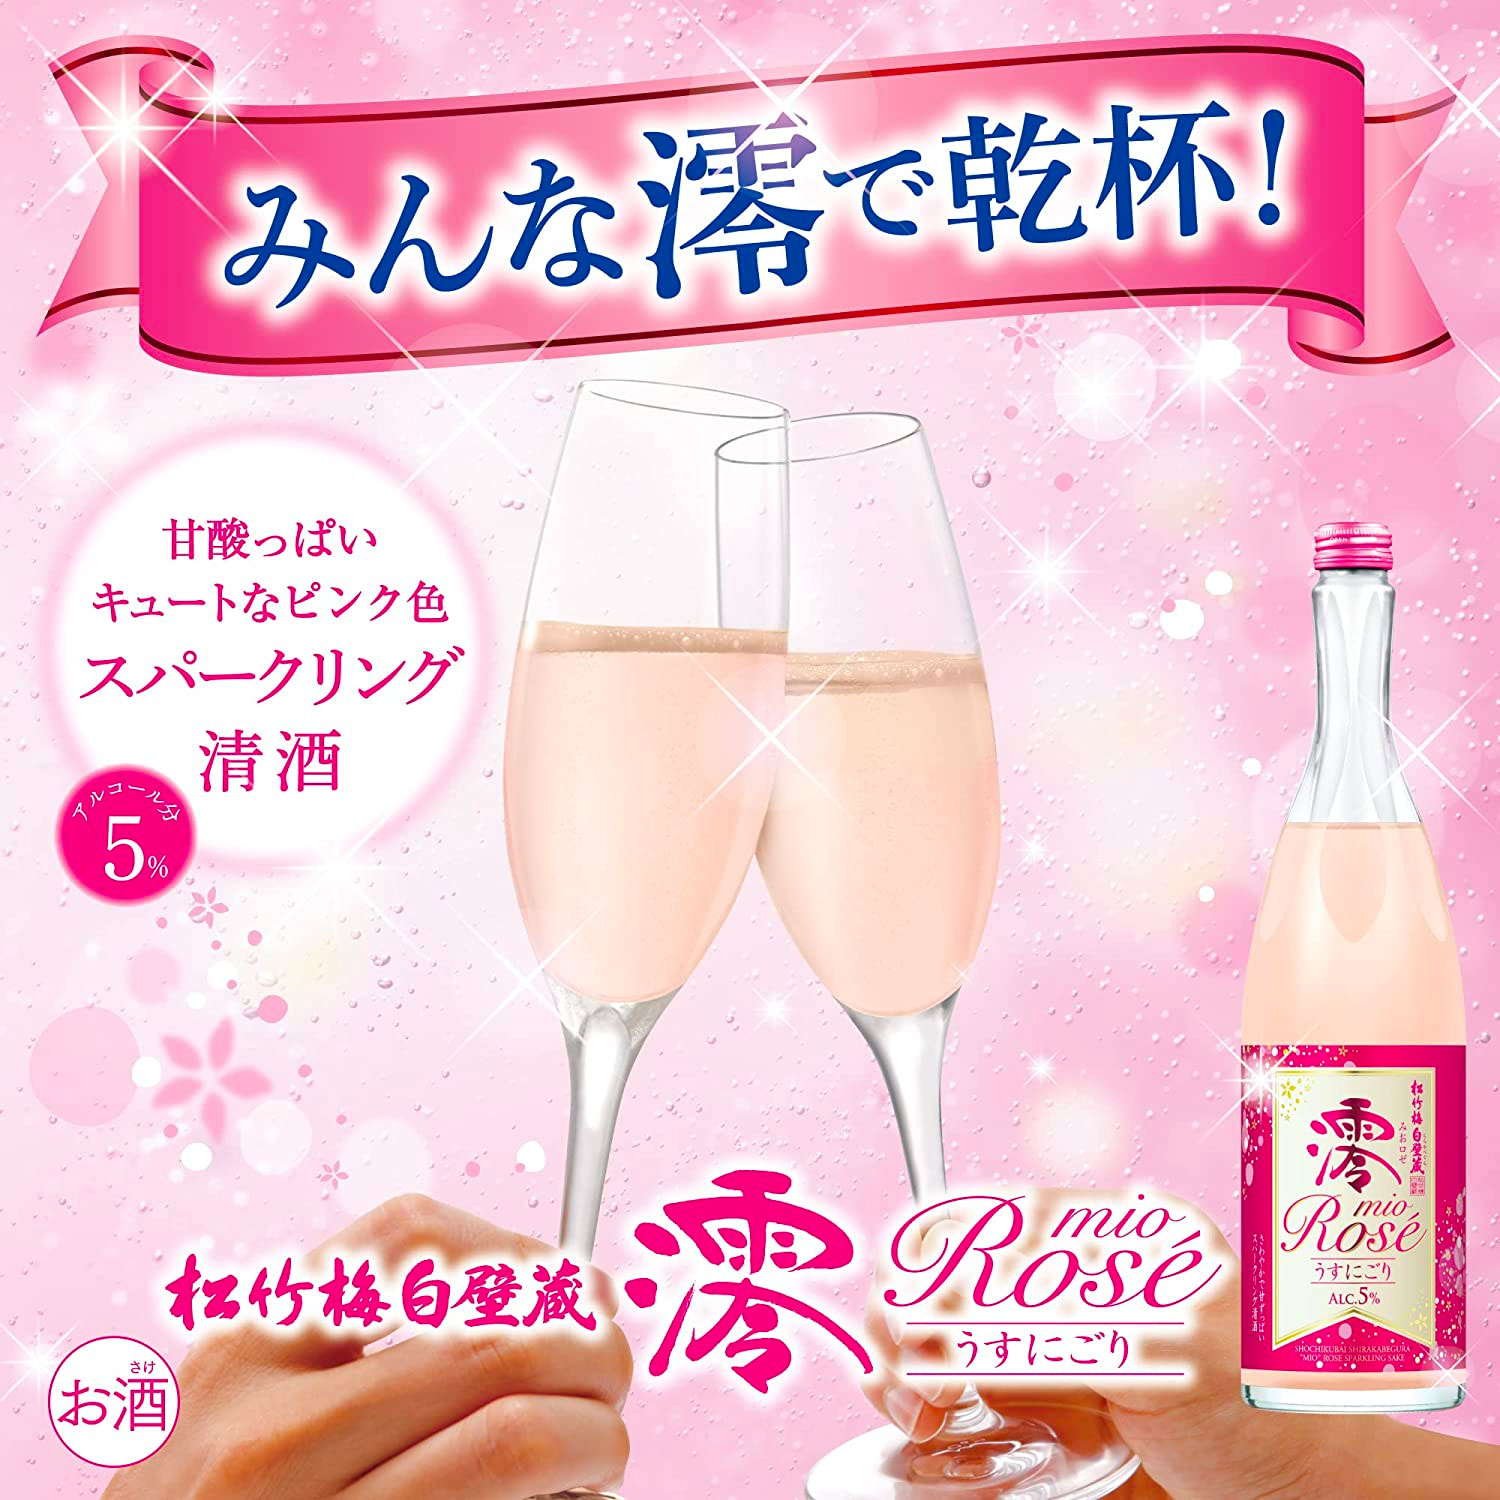 宝酒造 松竹梅 白壁蔵 澪 PREMIUM ROSEスパークリング 750ml 1本 アルコール分5% 日本酒 ミオ mio